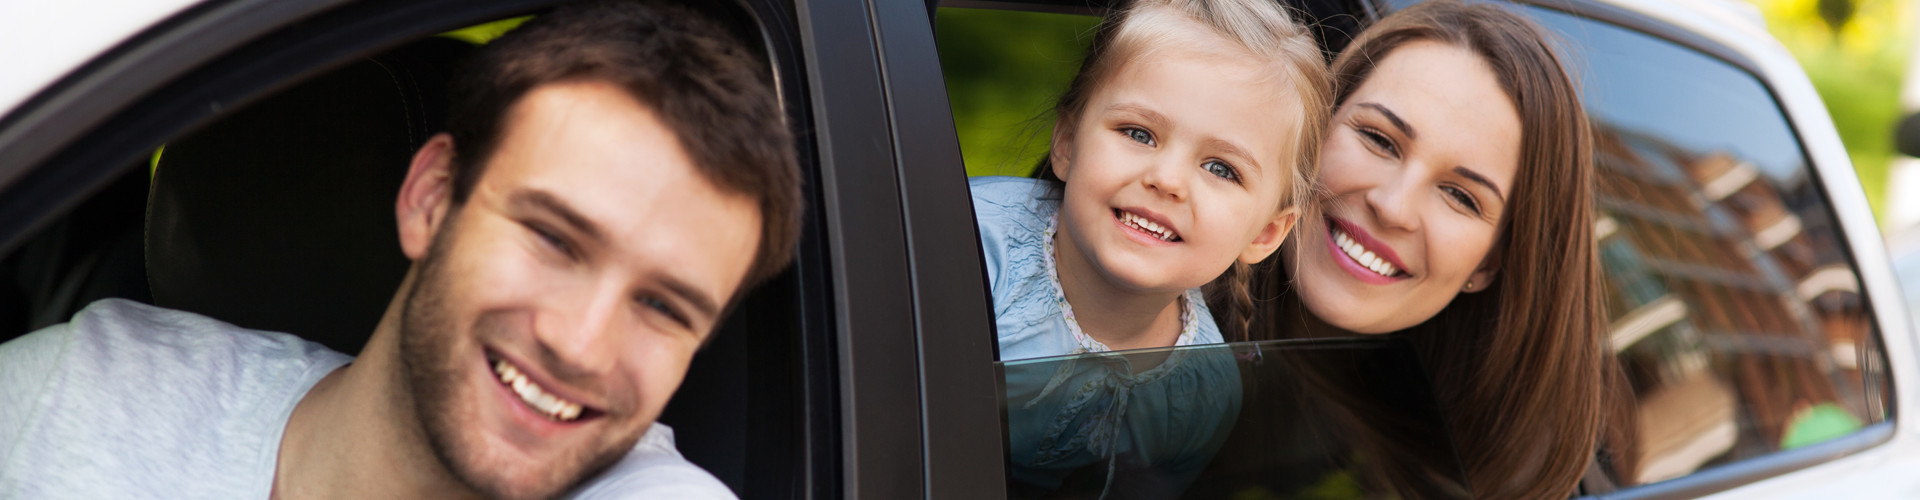 Mann blickt vom Fahrersitz aus dem Fenster eines weißen Autos, Frau und Kind blicken aus dem hinteren Fenster. © pikselstock, stock.adobe.com